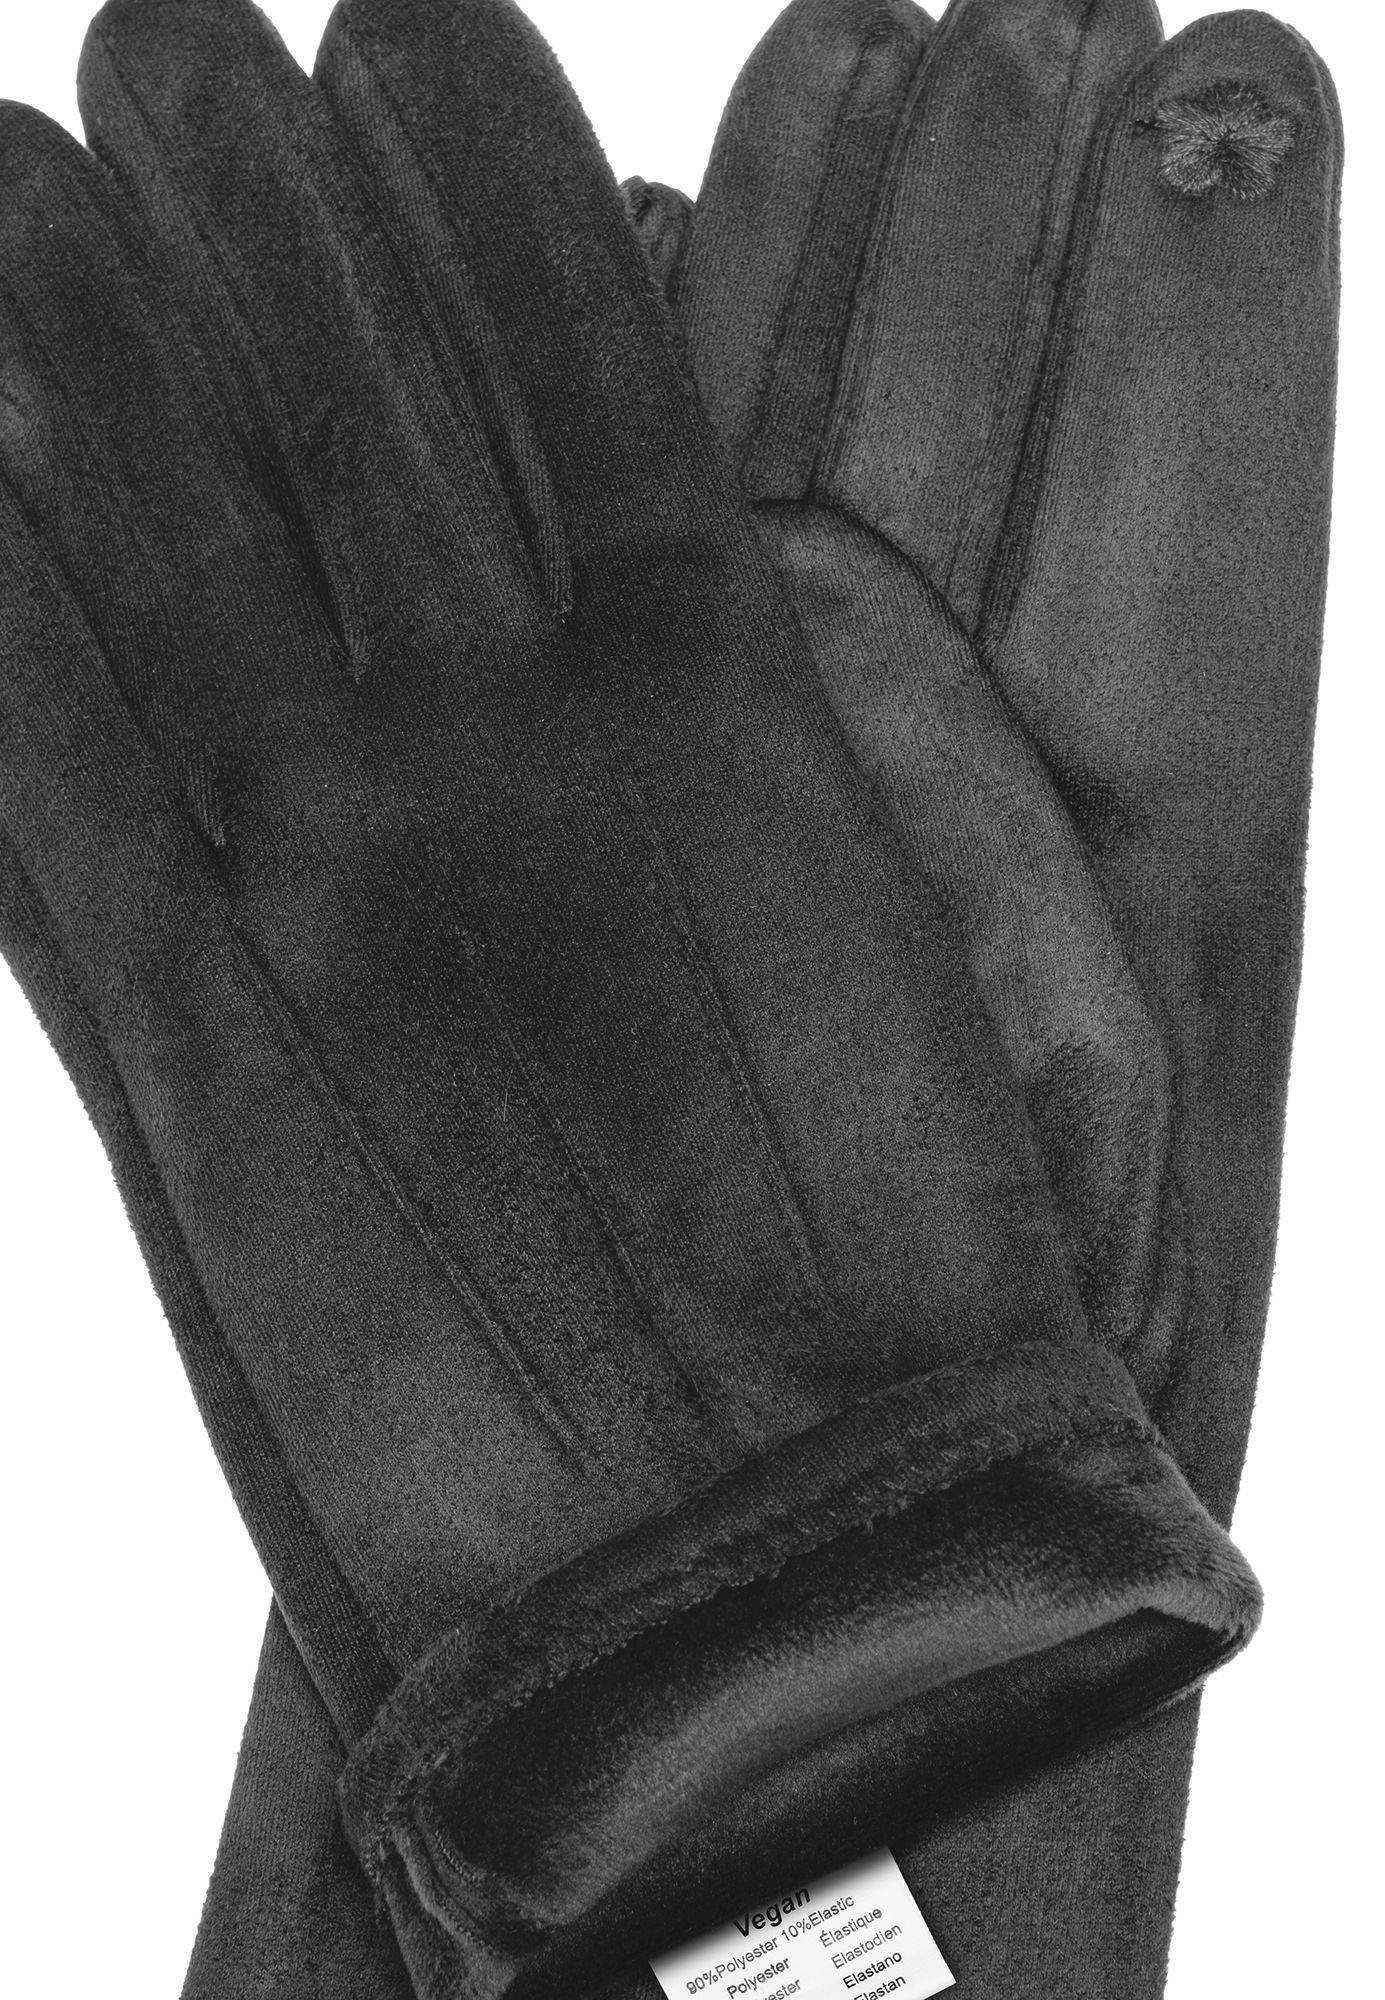 Caspar Strickhandschuhe GLV014 klassisch uni 3 Handschuhe Nähten mit Damen elegante dunkelgrau